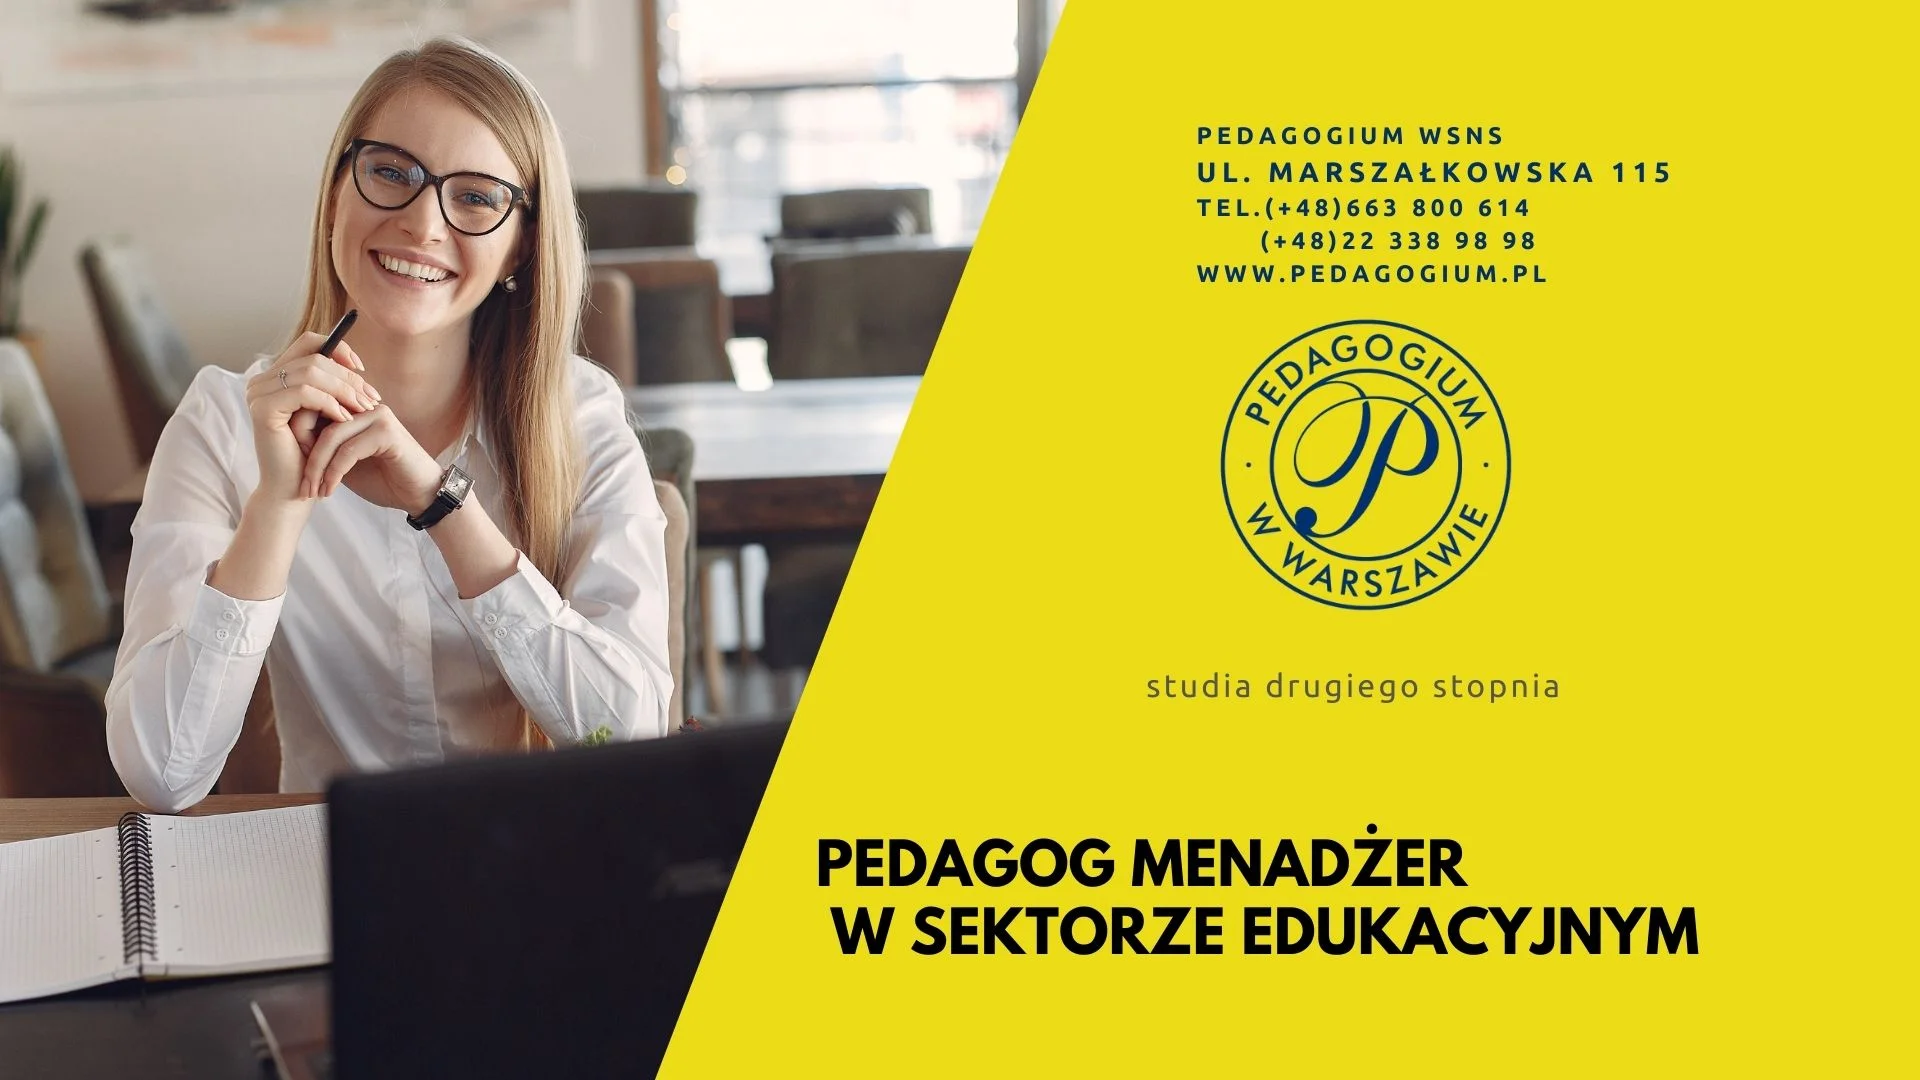 Pedagog-menadzer-w-sektorze-edukacyjnym-i-pokrewnych-zawodow-spolecznych-Ped2-1